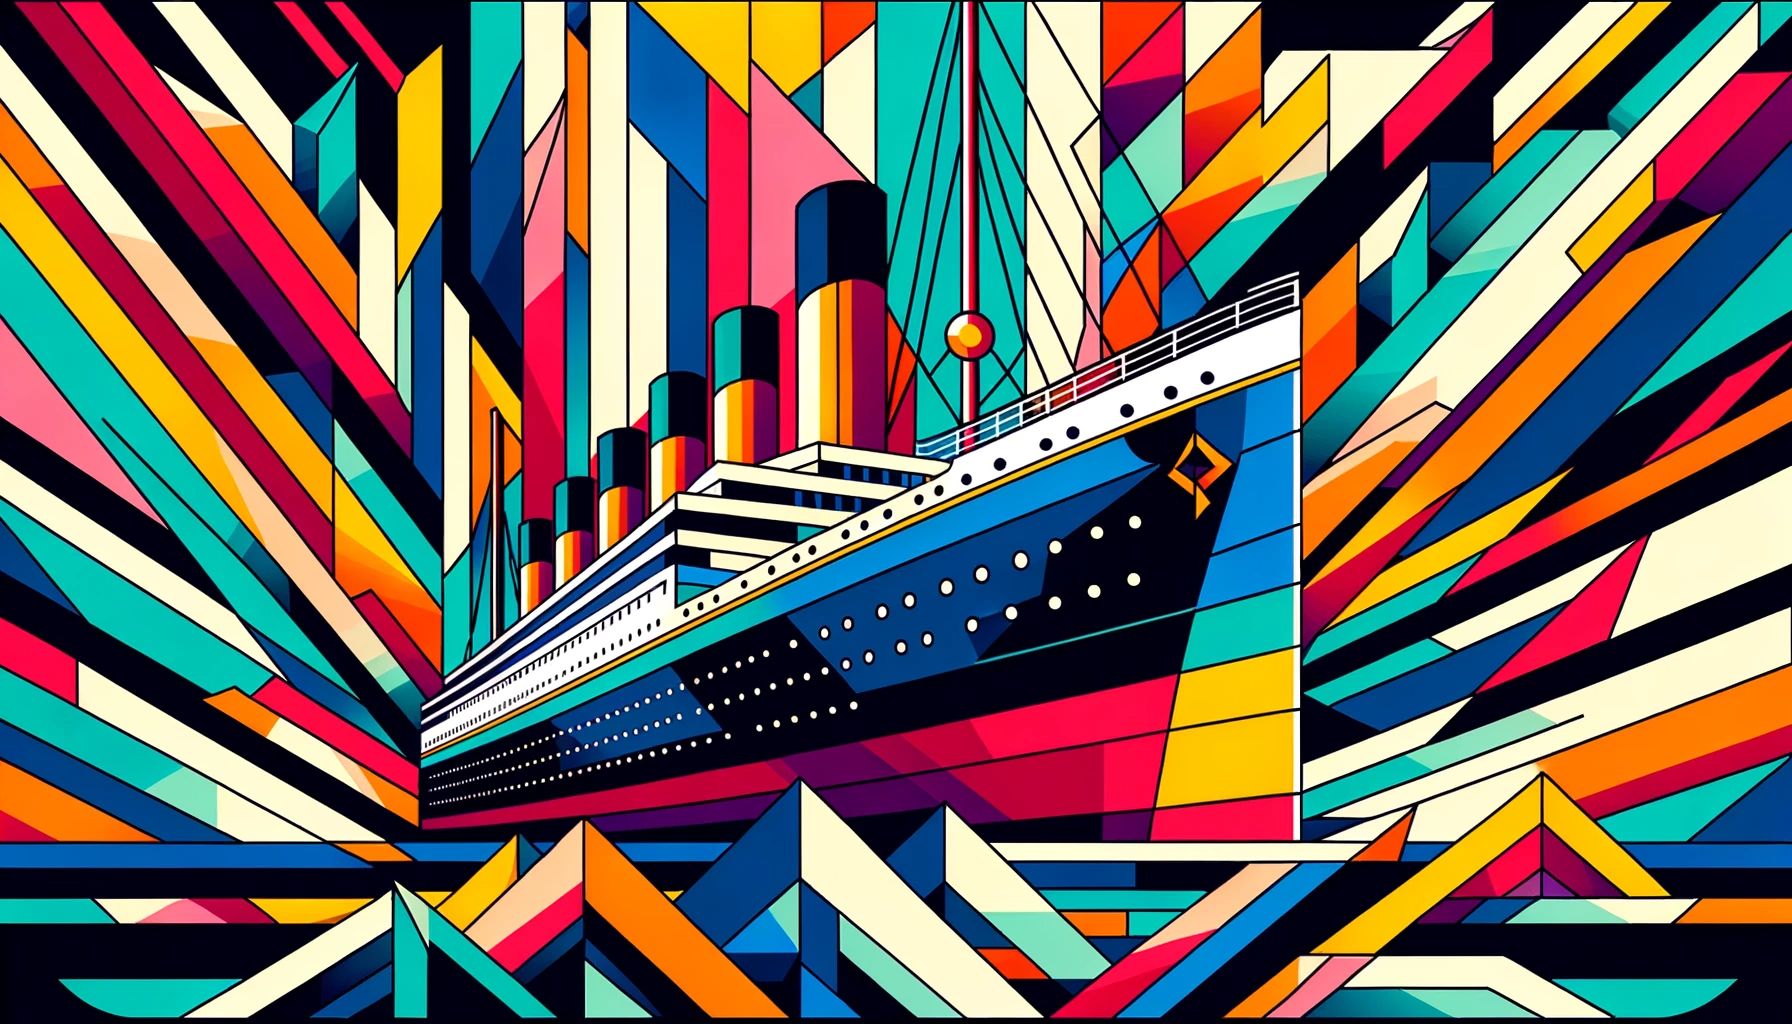 Titanic dans le style « cubisme »